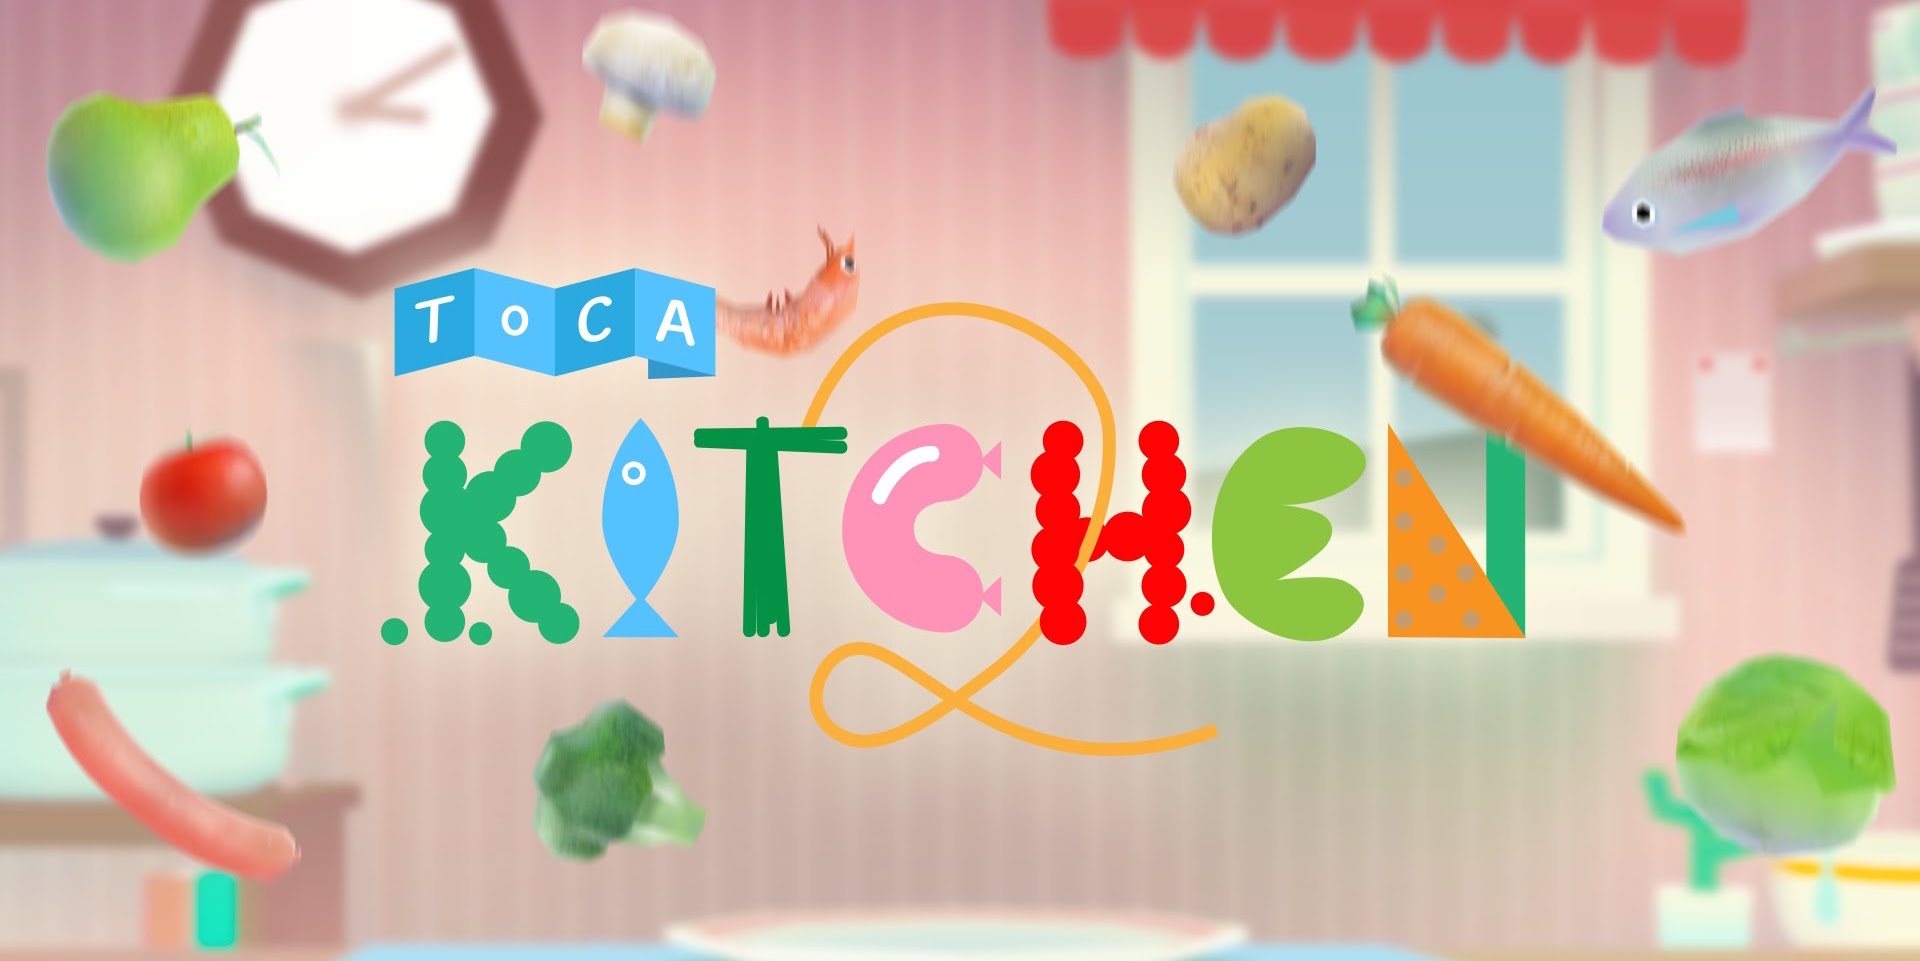 toca kitchen 2 play online free